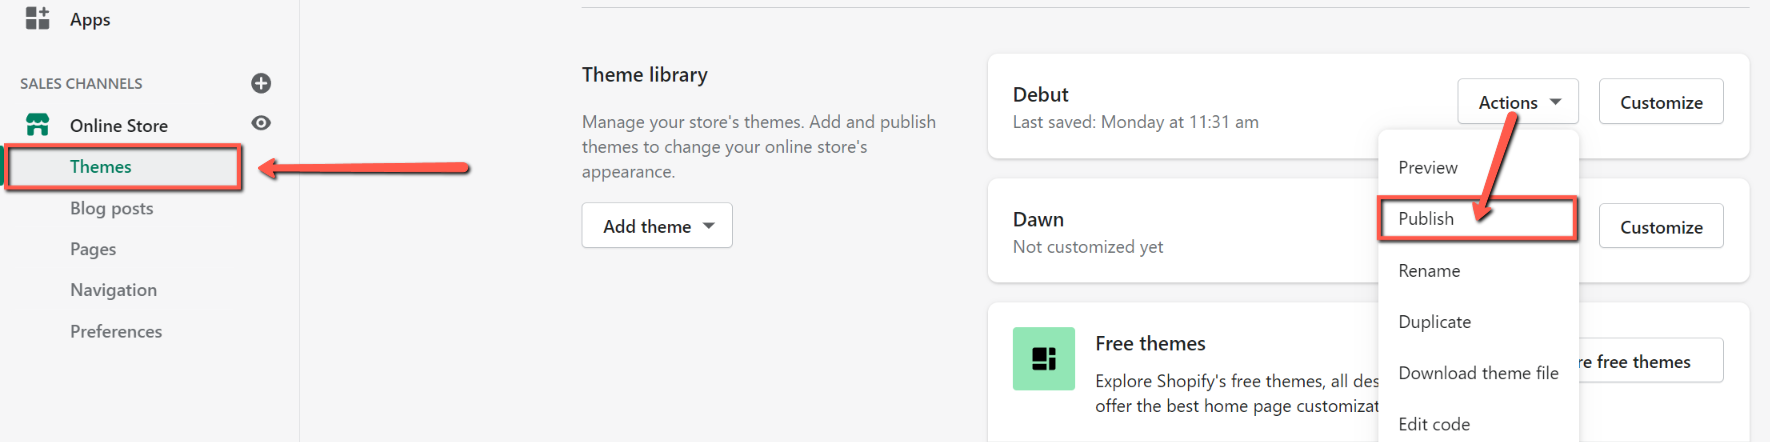 Shopify theme library